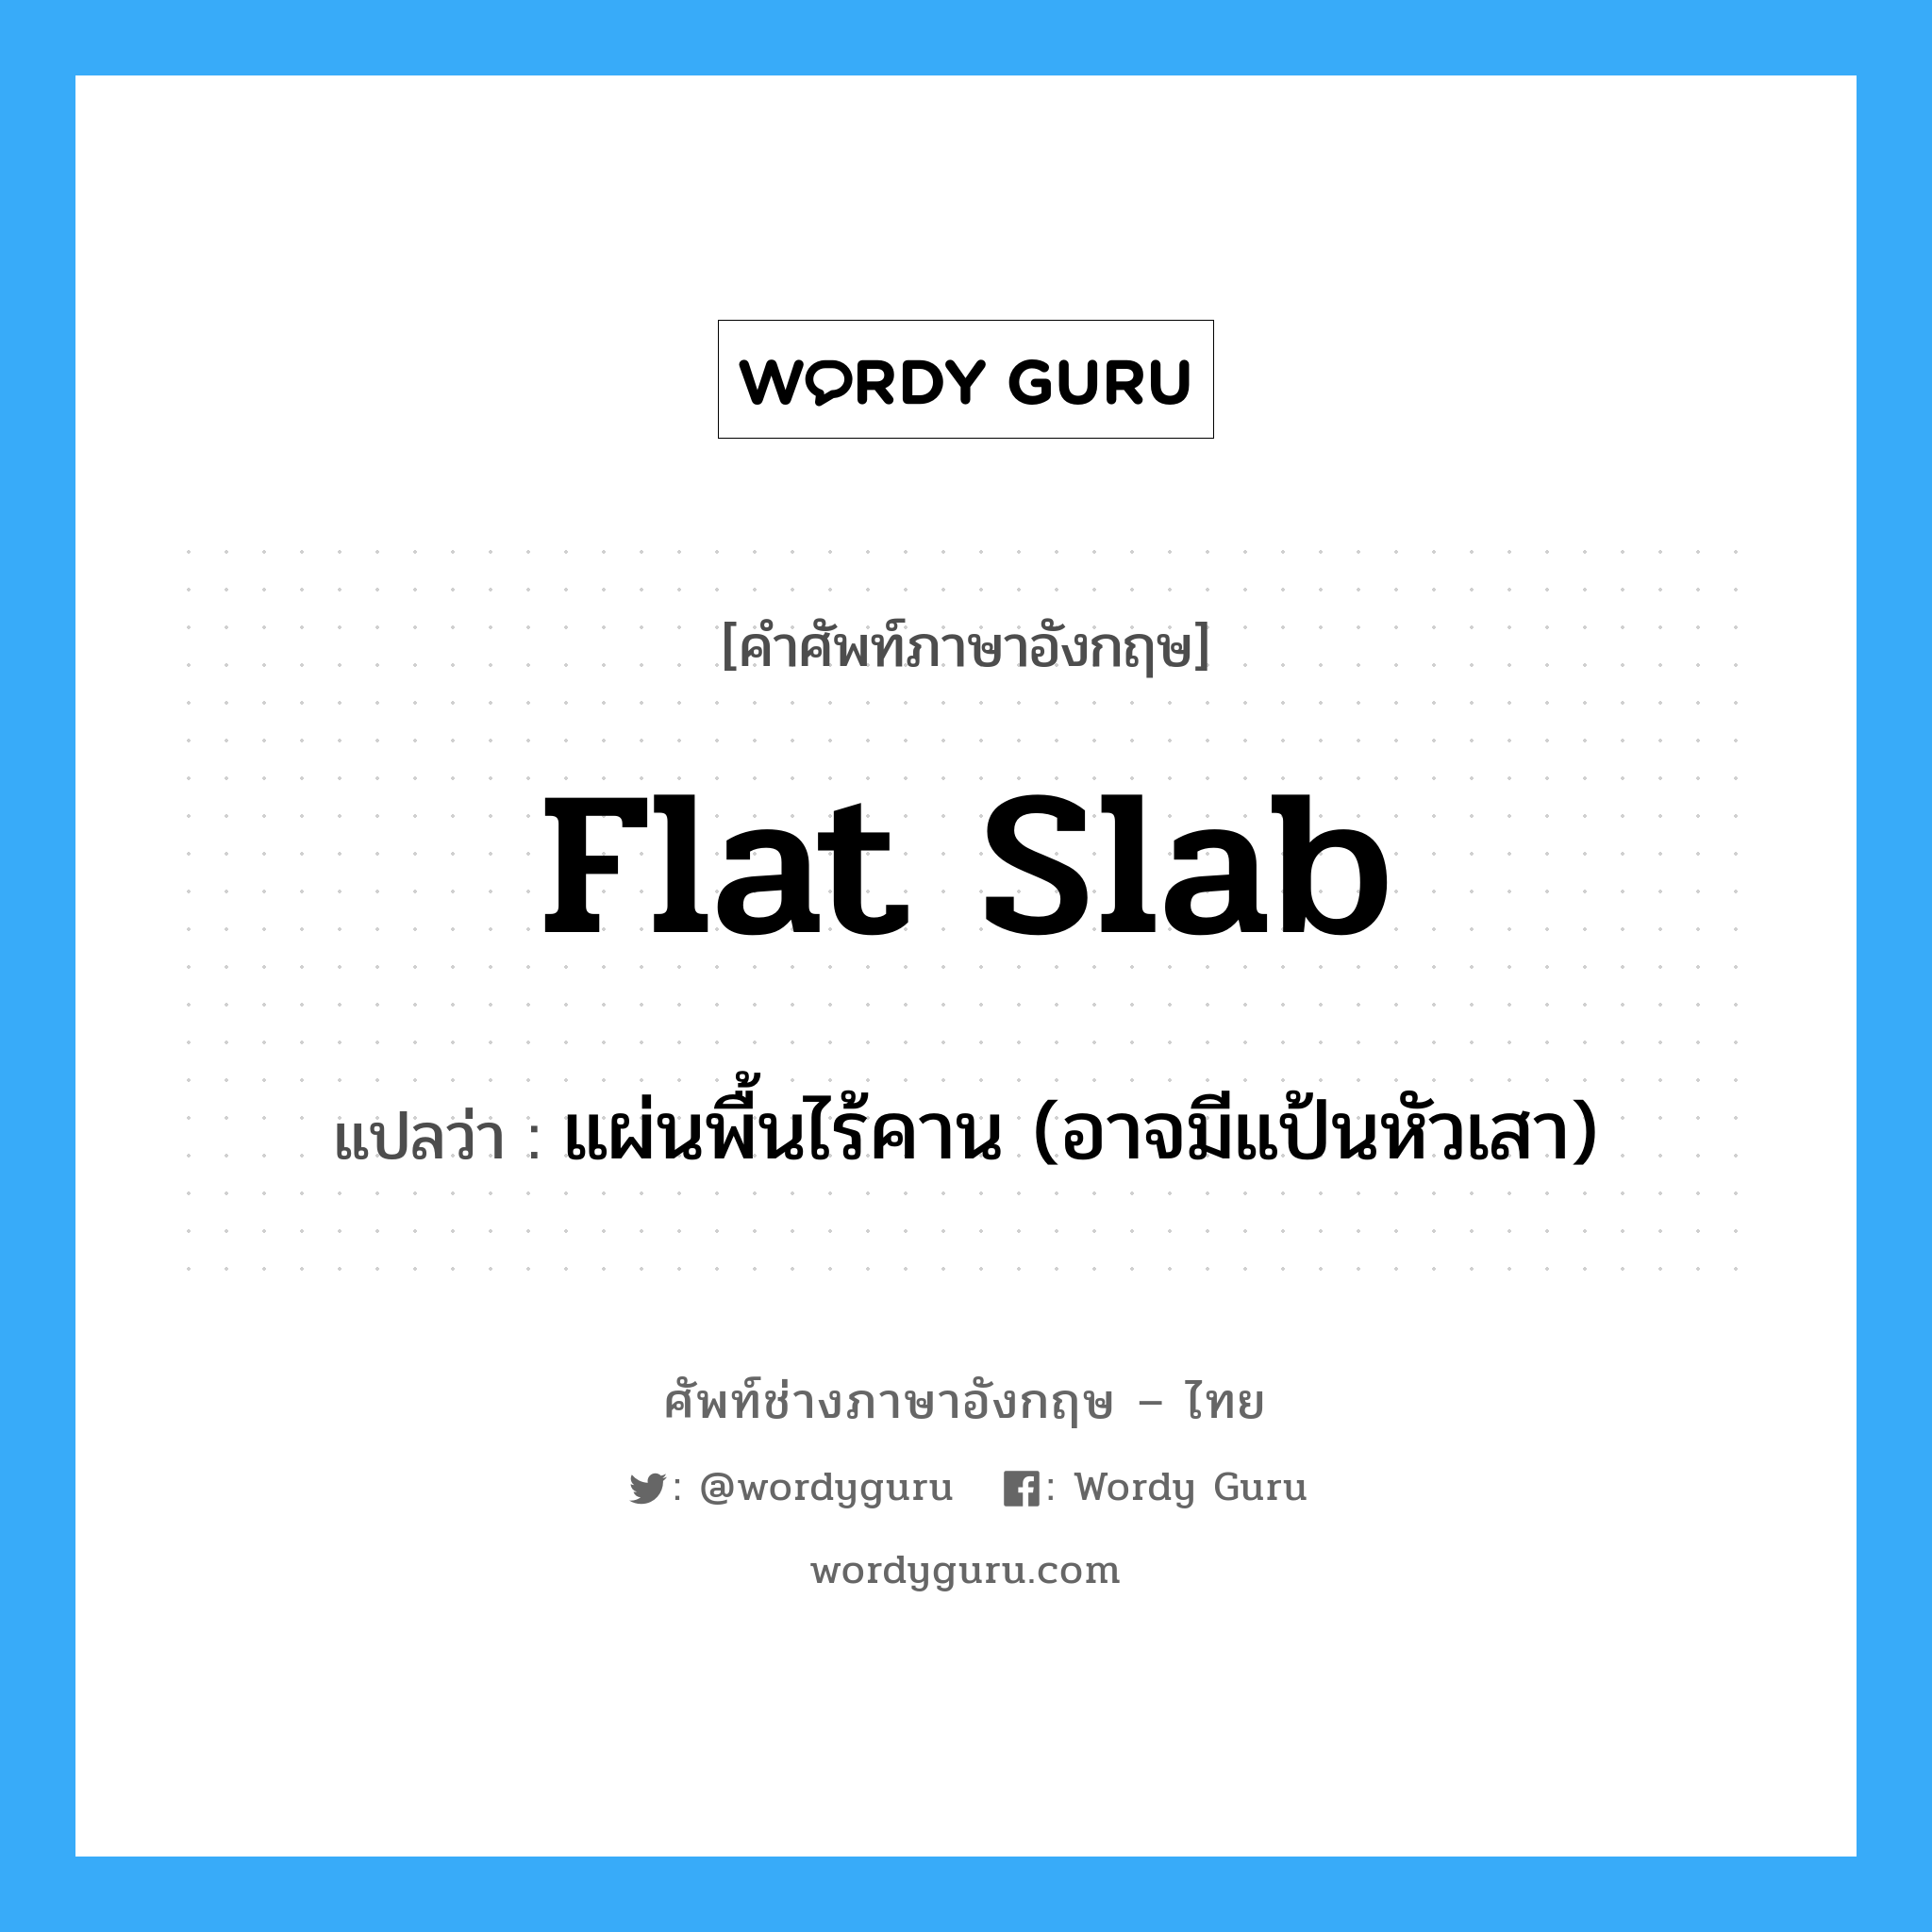 flat slab แปลว่า?, คำศัพท์ช่างภาษาอังกฤษ - ไทย flat slab คำศัพท์ภาษาอังกฤษ flat slab แปลว่า แผ่นพื้นไร้คาน (อาจมีแป้นหัวเสา)